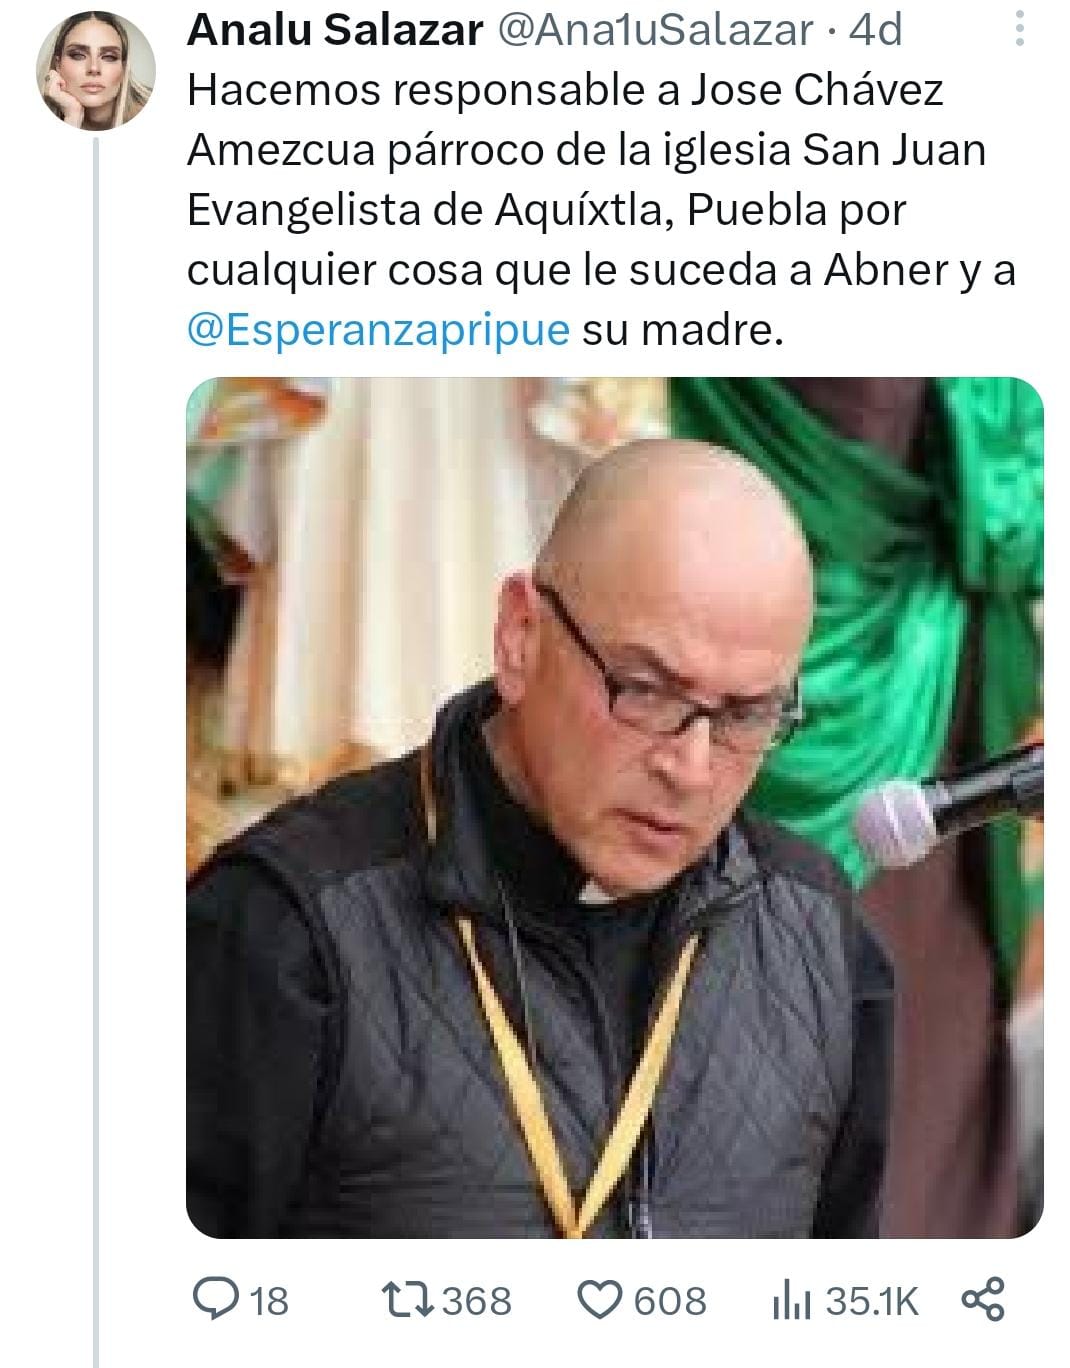 En redes sociales, señalan a Jose Chávez, párroco de la iglesia San Juan Evangelista, Aquíxtla, por presuntas amenazas a Abner y su mamá